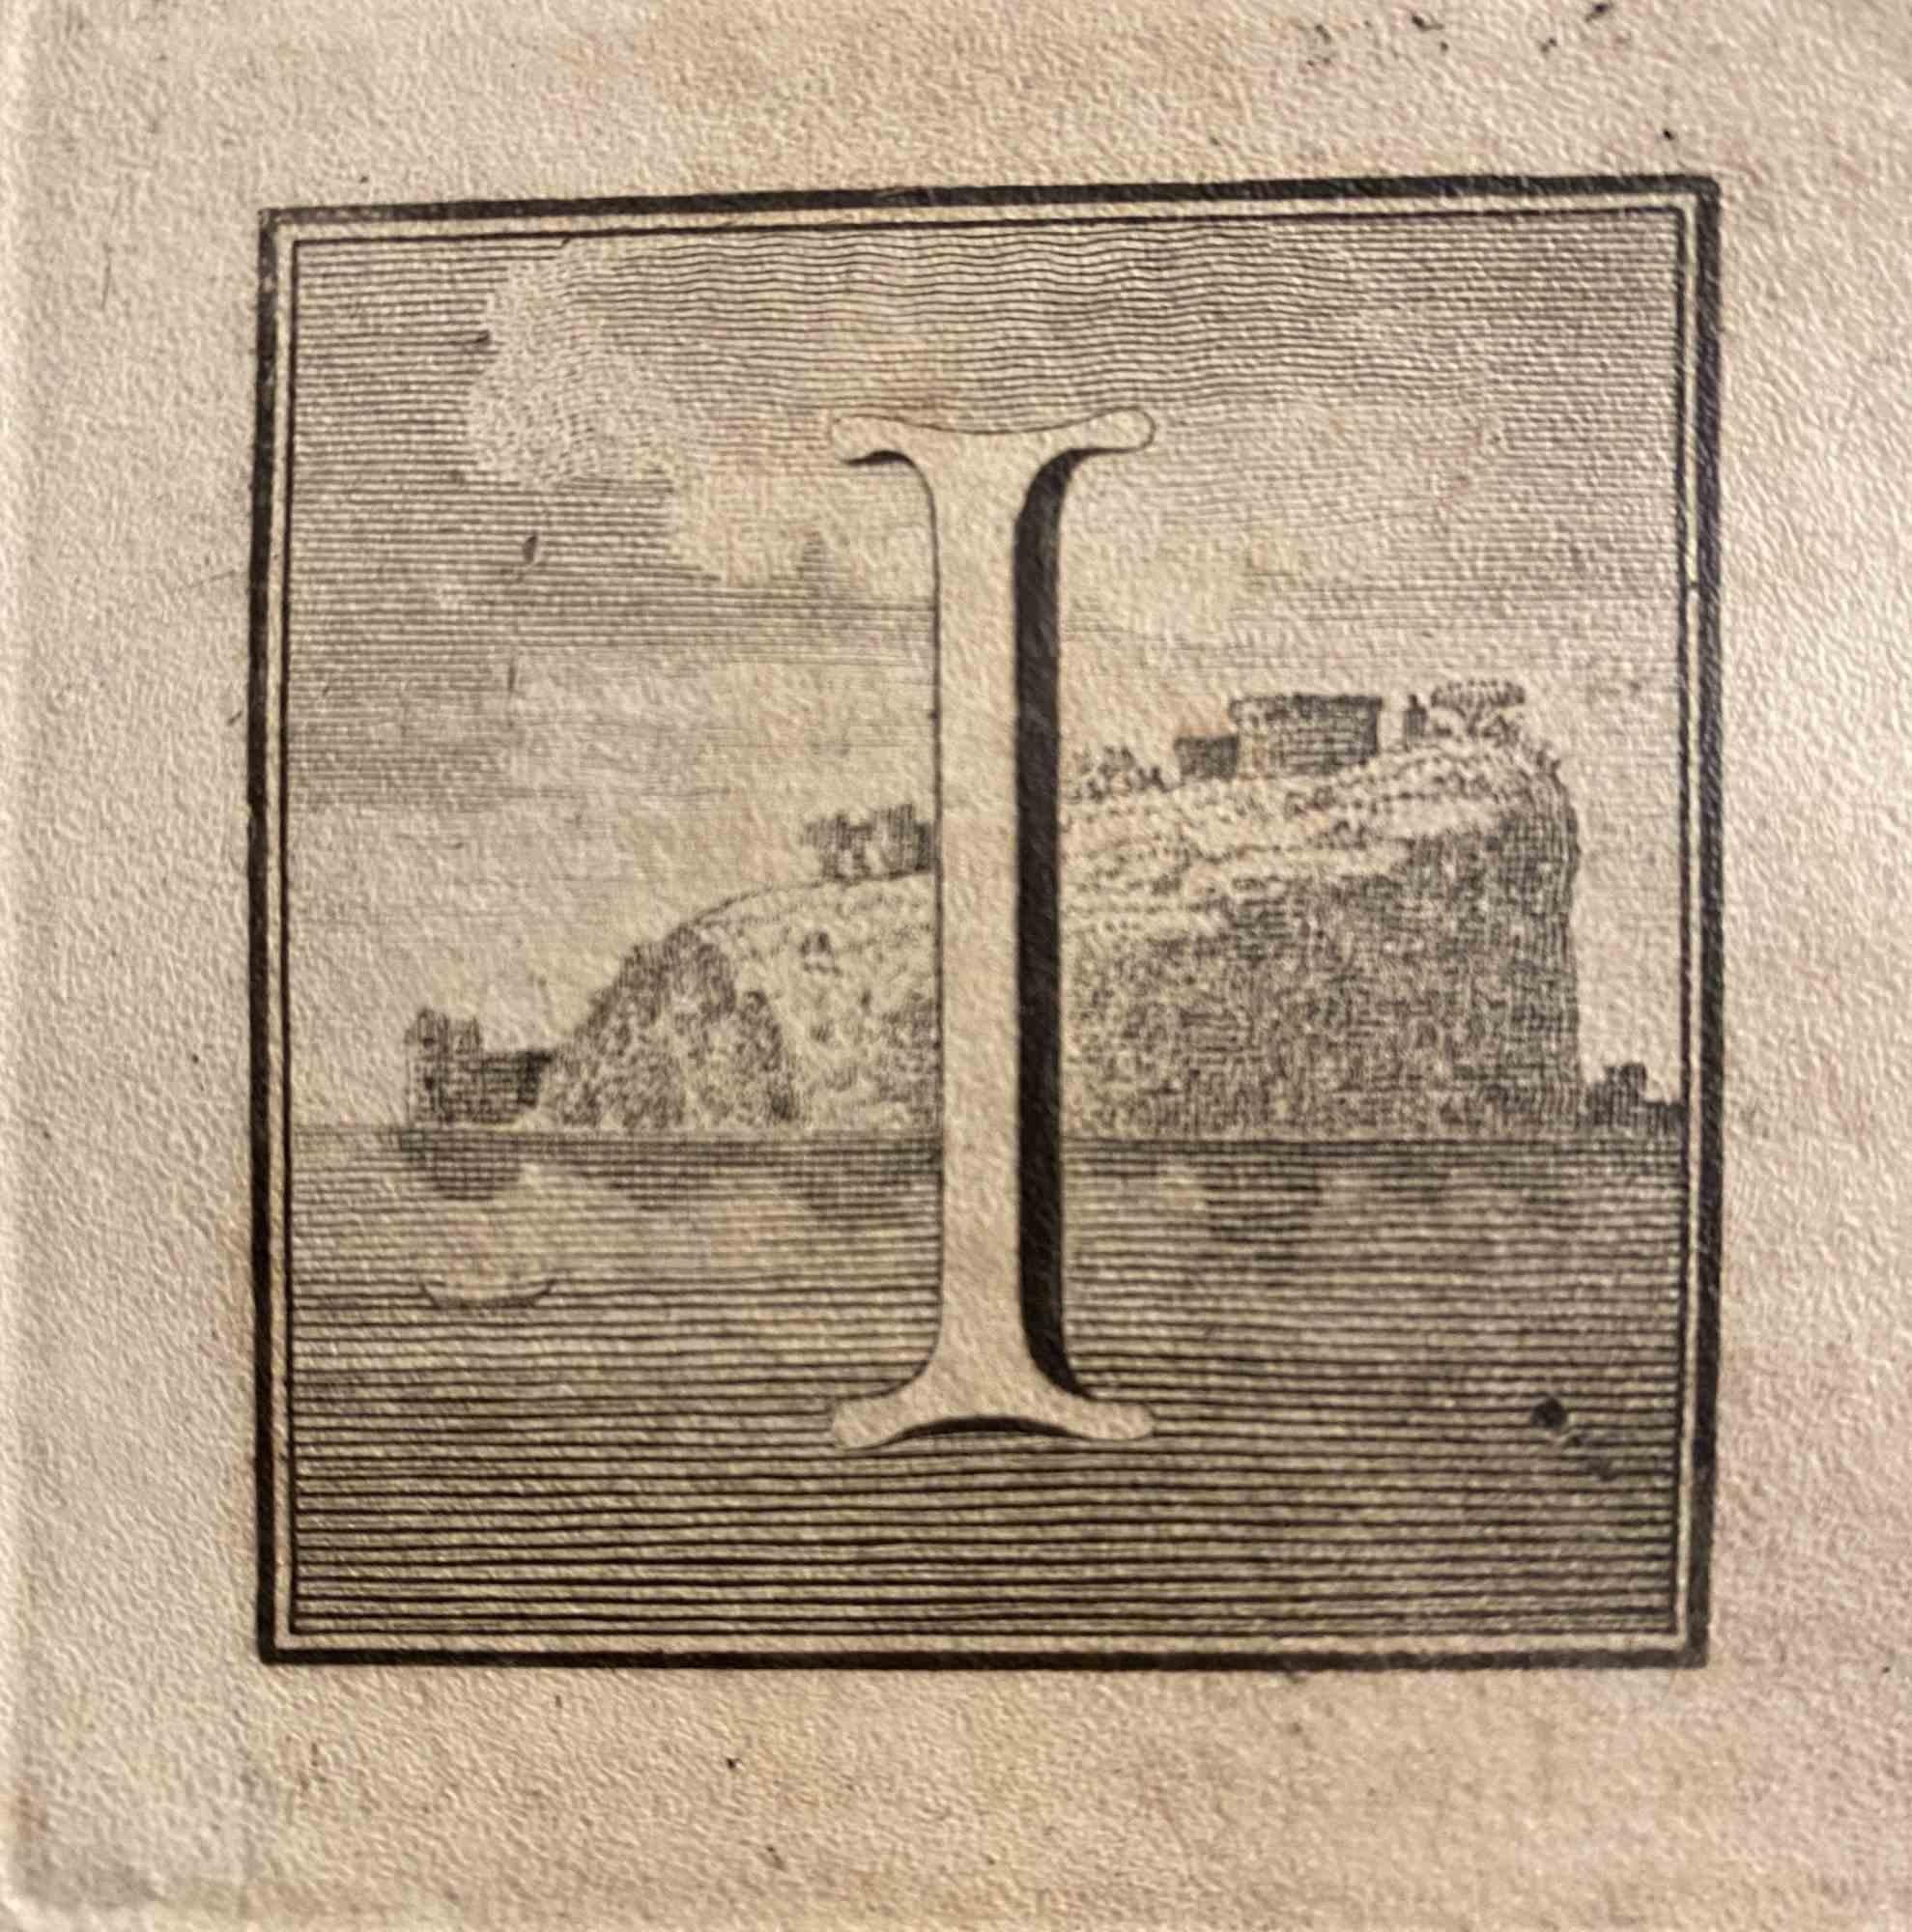 Lettre de l'Alphabet I de la série "Antiquités d'Herculanum", est une gravure sur papier réalisée par Luigi Vanvitelli au 18ème siècle.

Bon état avec quelques rousseurs.

La gravure appartient à la suite d'estampes "Antiquités d'Herculanum